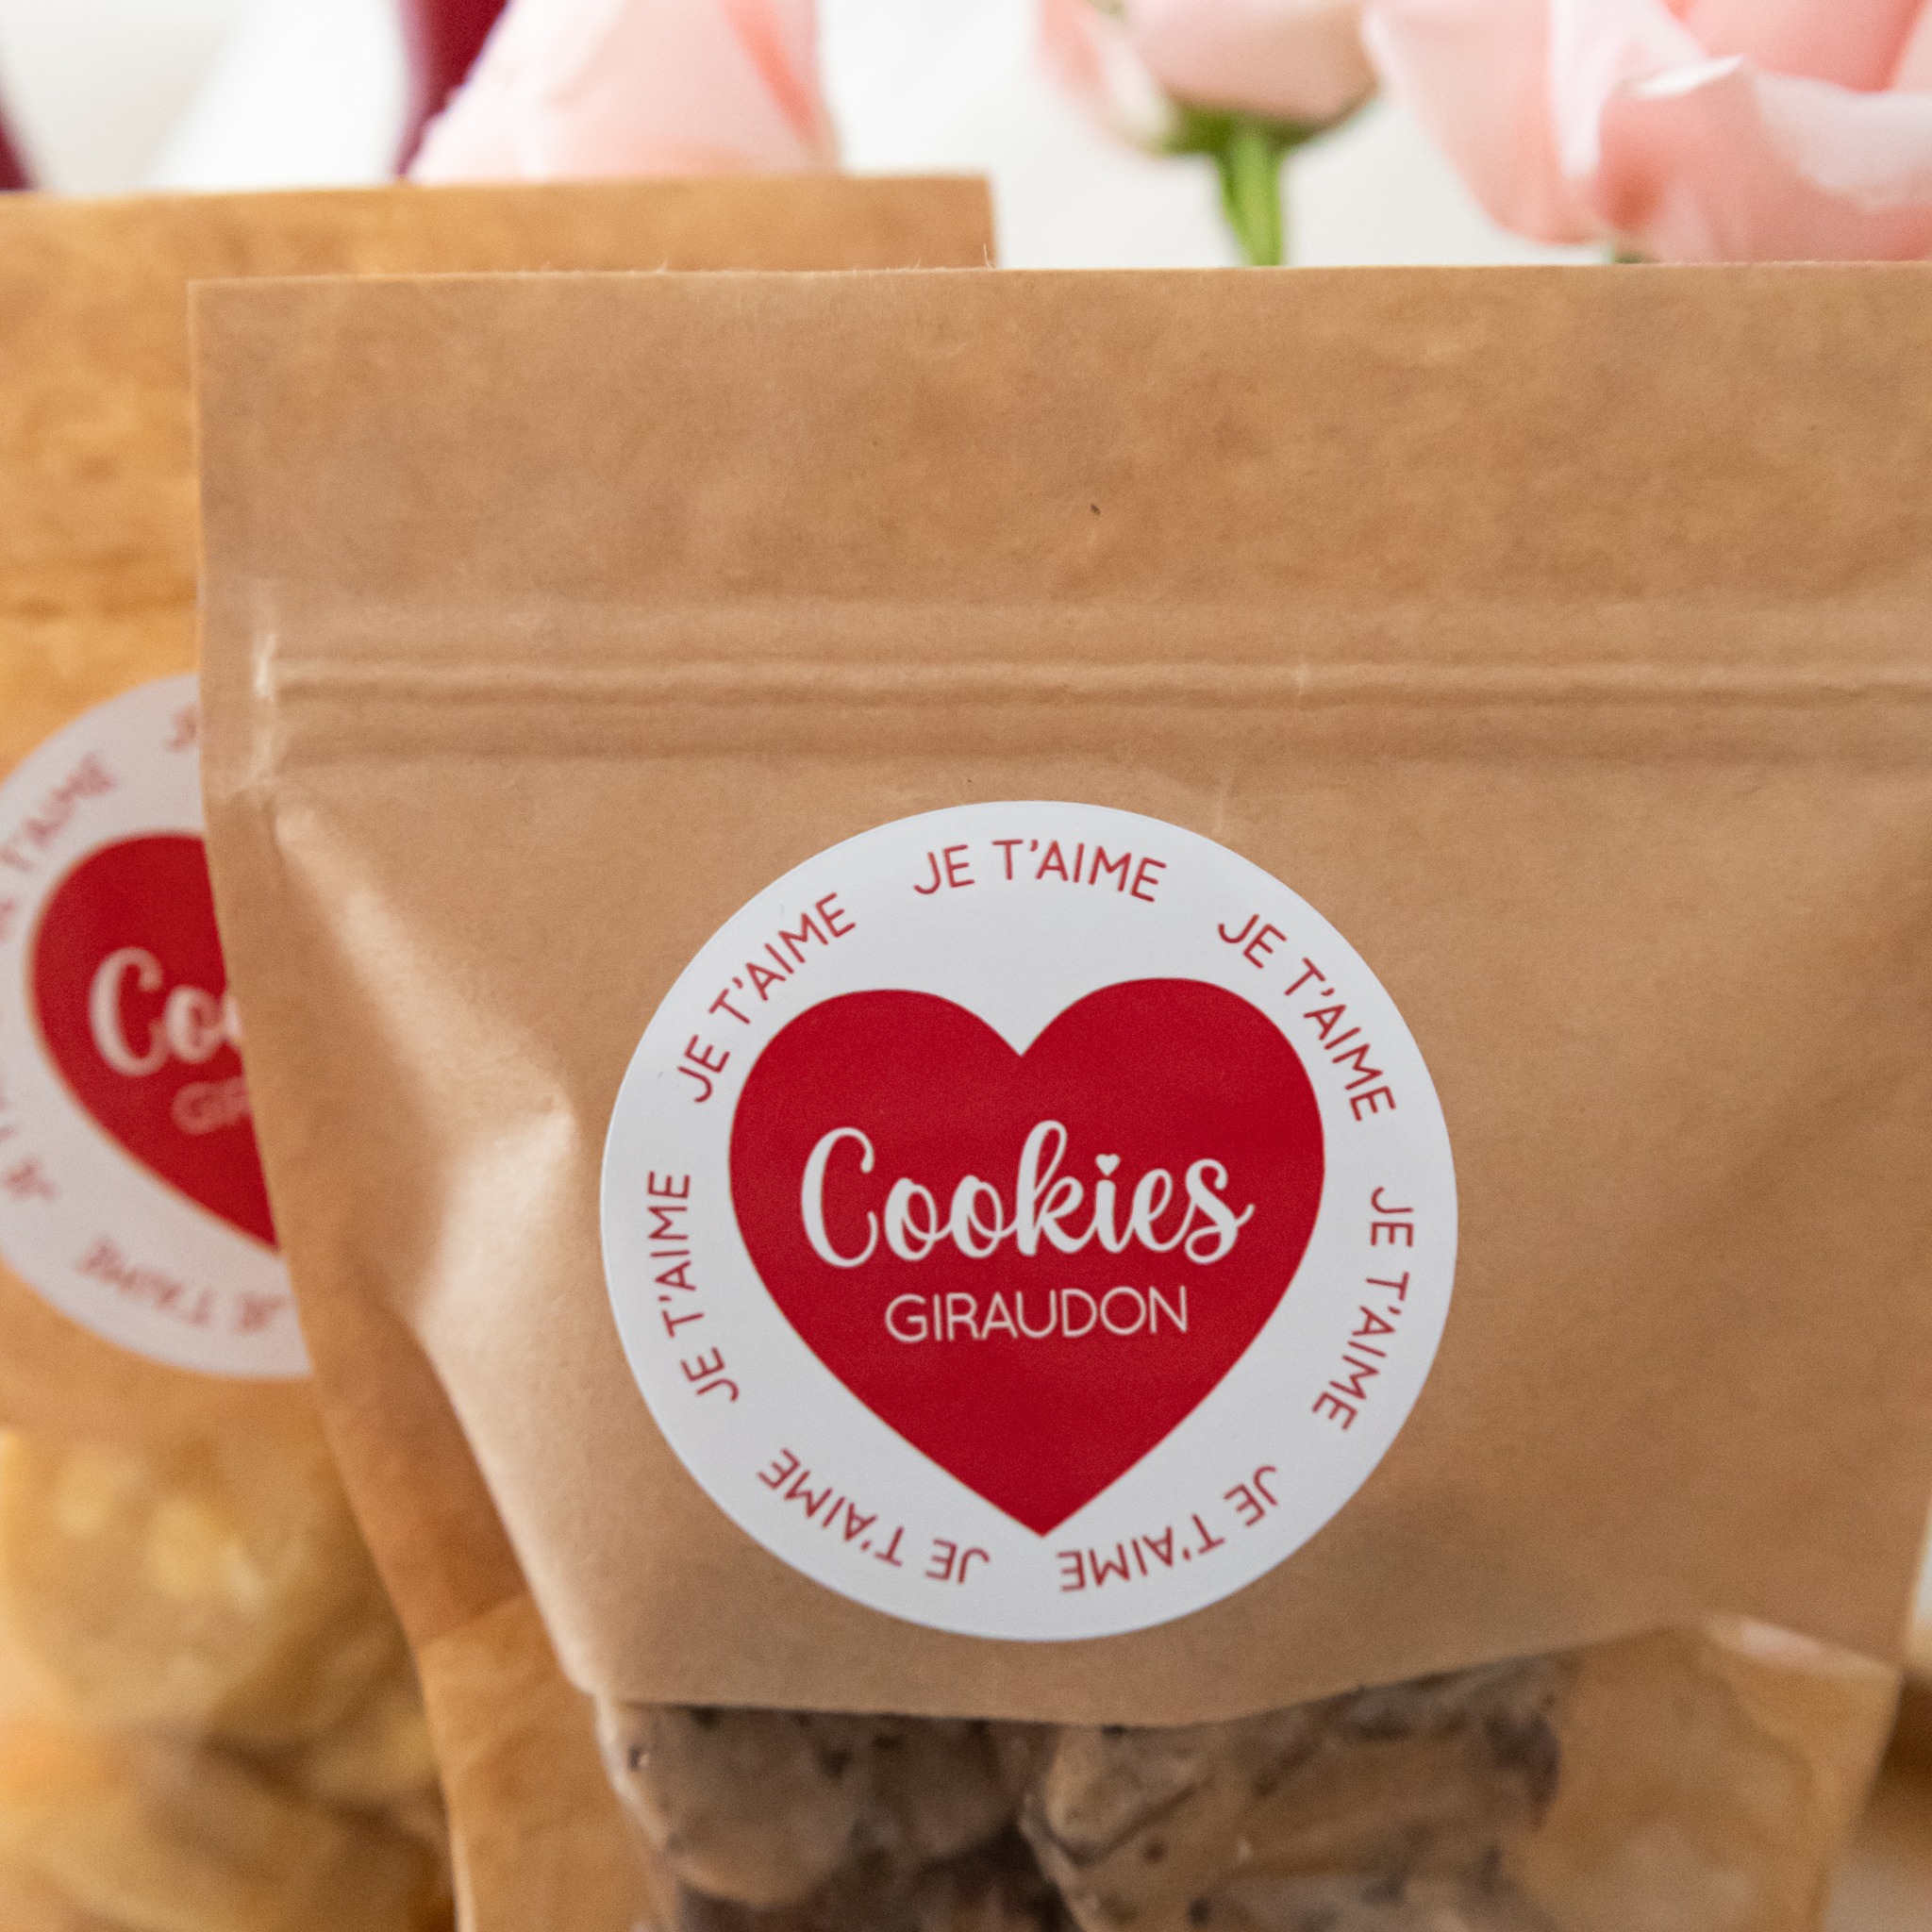 Célébrez l'amour avec les Cookies Giraudon : une rencontre entre passion et gourmandise 🍪

🍪 Faits maison à Gémenos (13)
📍Disponibles dans plusieurs points de vente
💌 Plus d’infos sur notre site web (lien dans notre bio)

#CookiesGiraudon #SaintValentinGourmande #CookiesAvecAmour #JoyeuseSaintValentin #GourmandiseAuthentique #homemadewithlove #CookiesArtisanaux #FaitAvecAmour #Gémenos #CuisineArtisanale #marseille #MadeInFrance